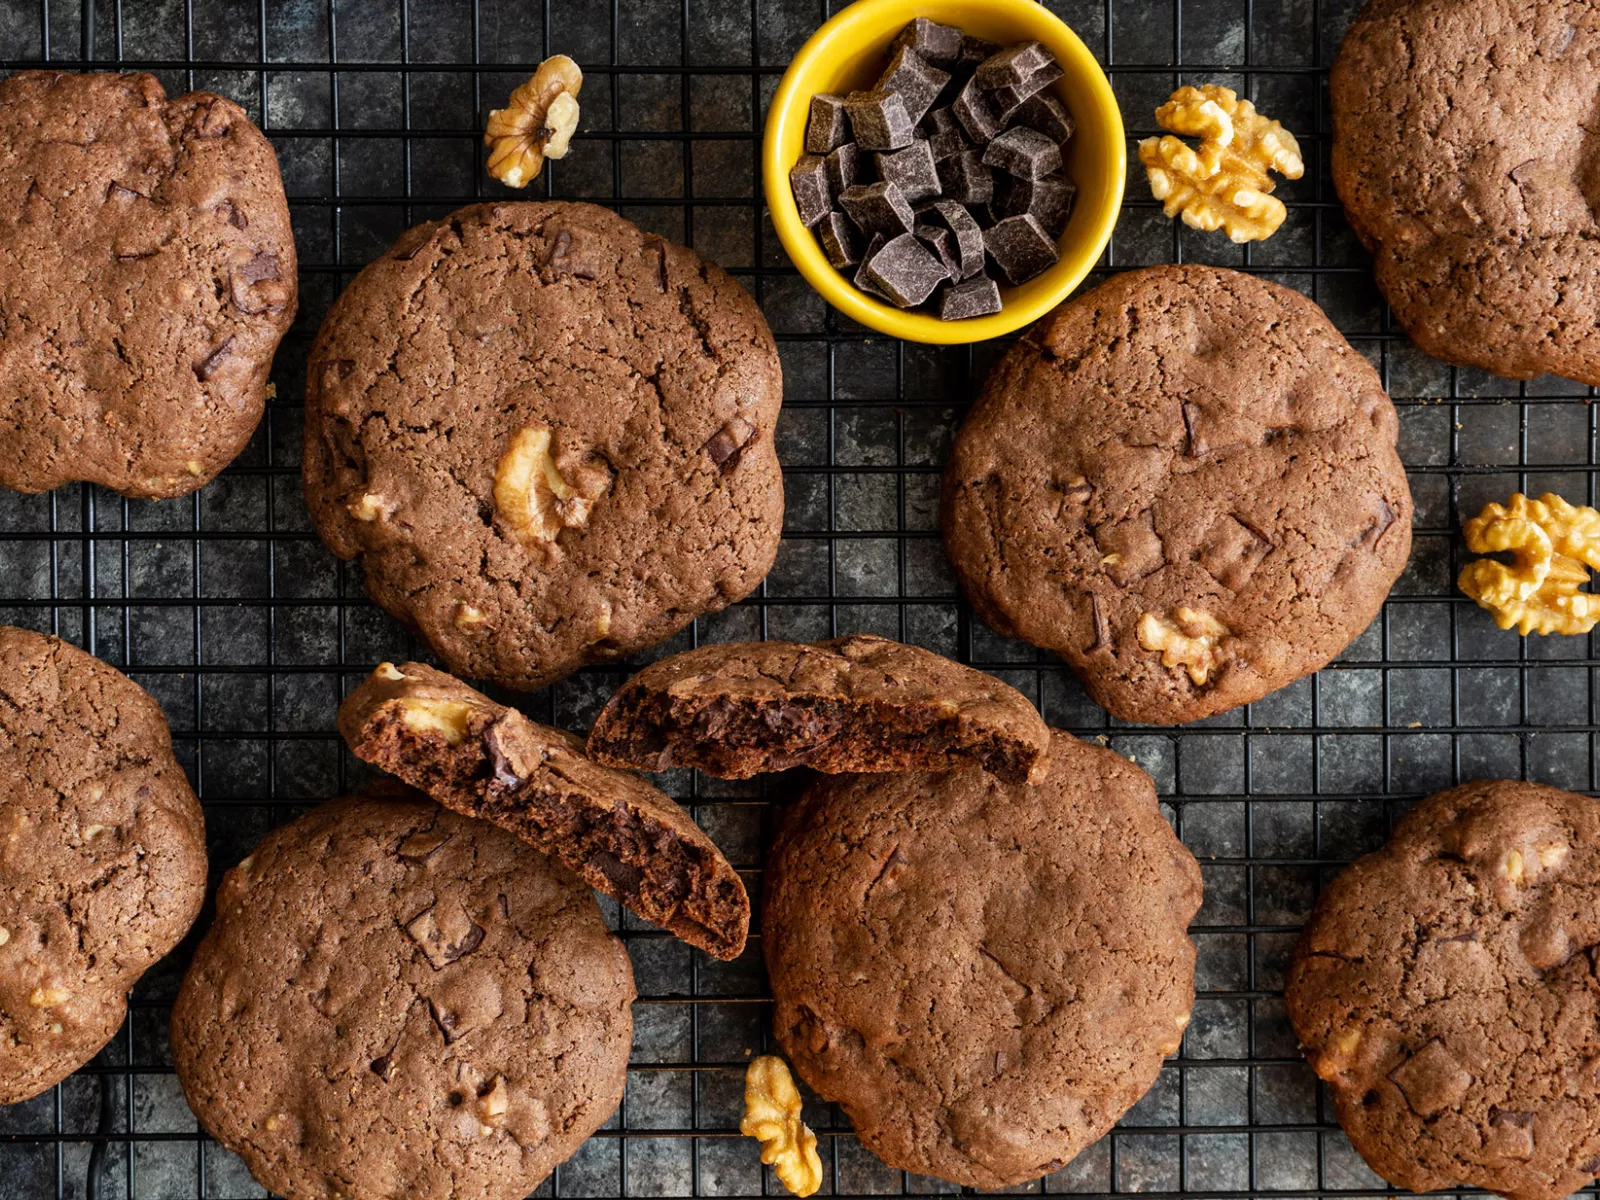 Brownie-style Cookies